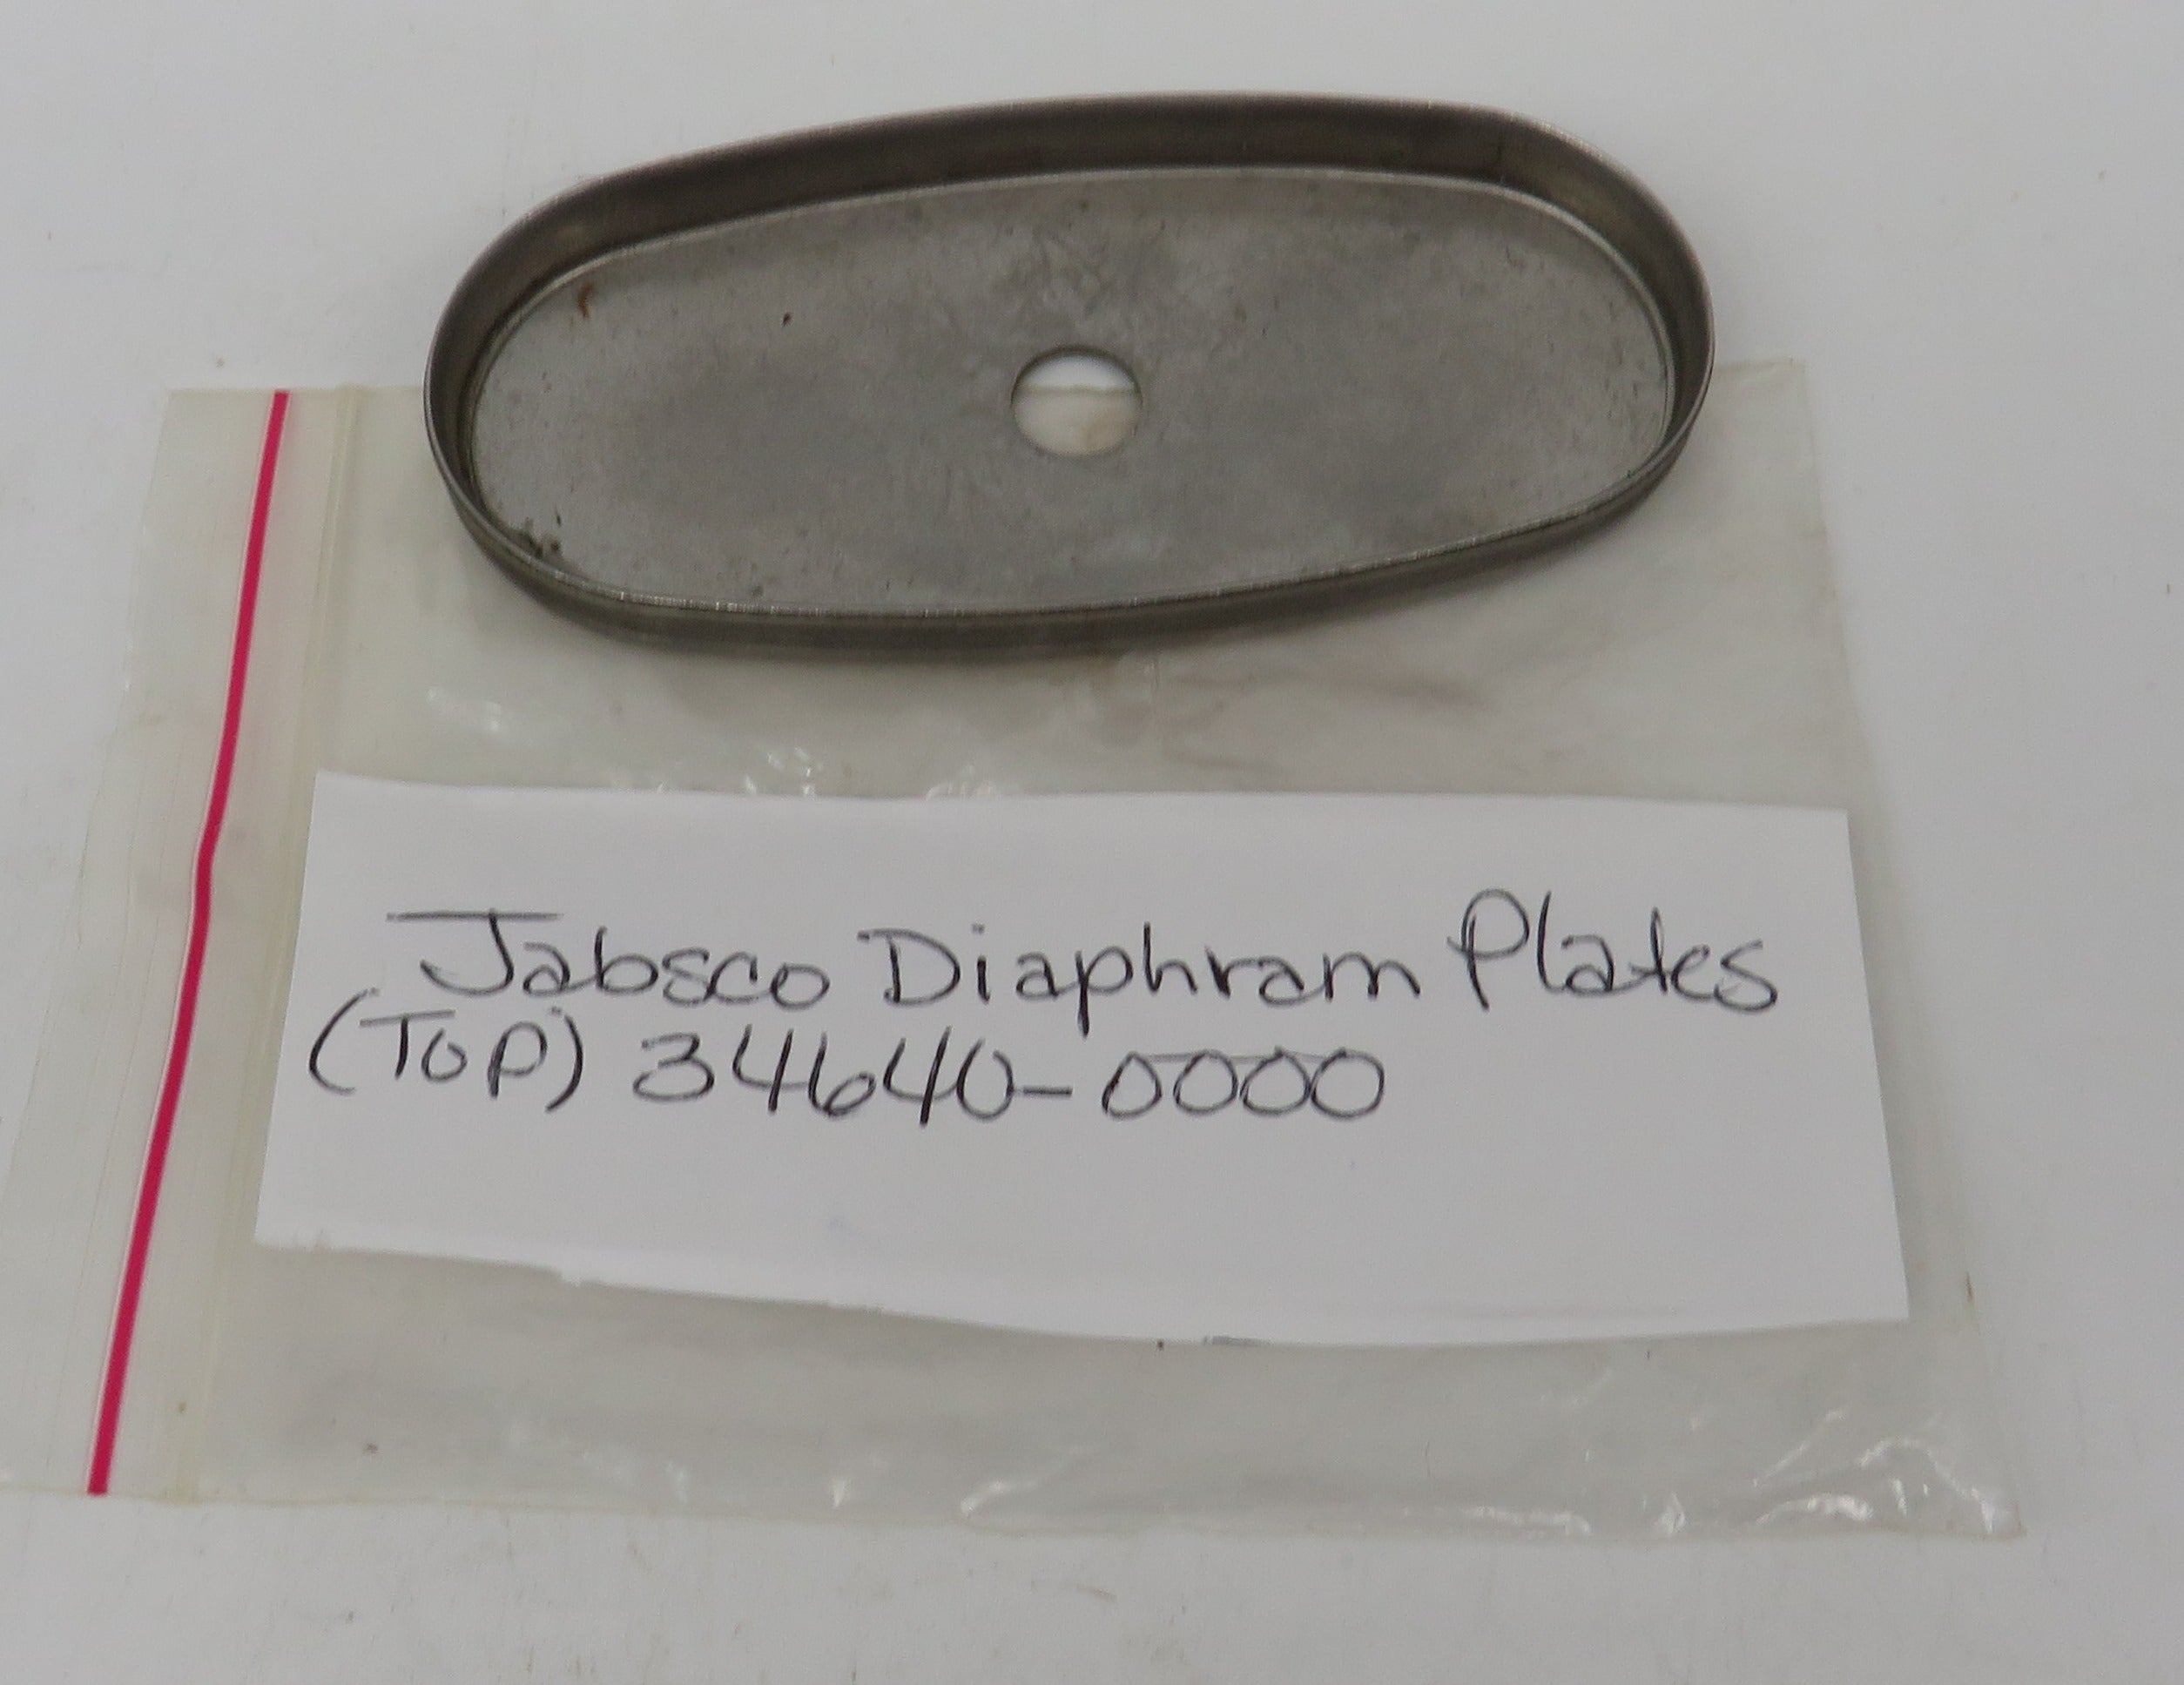 34640-0000 Jabsco Par Diaphragm Plate (Top)